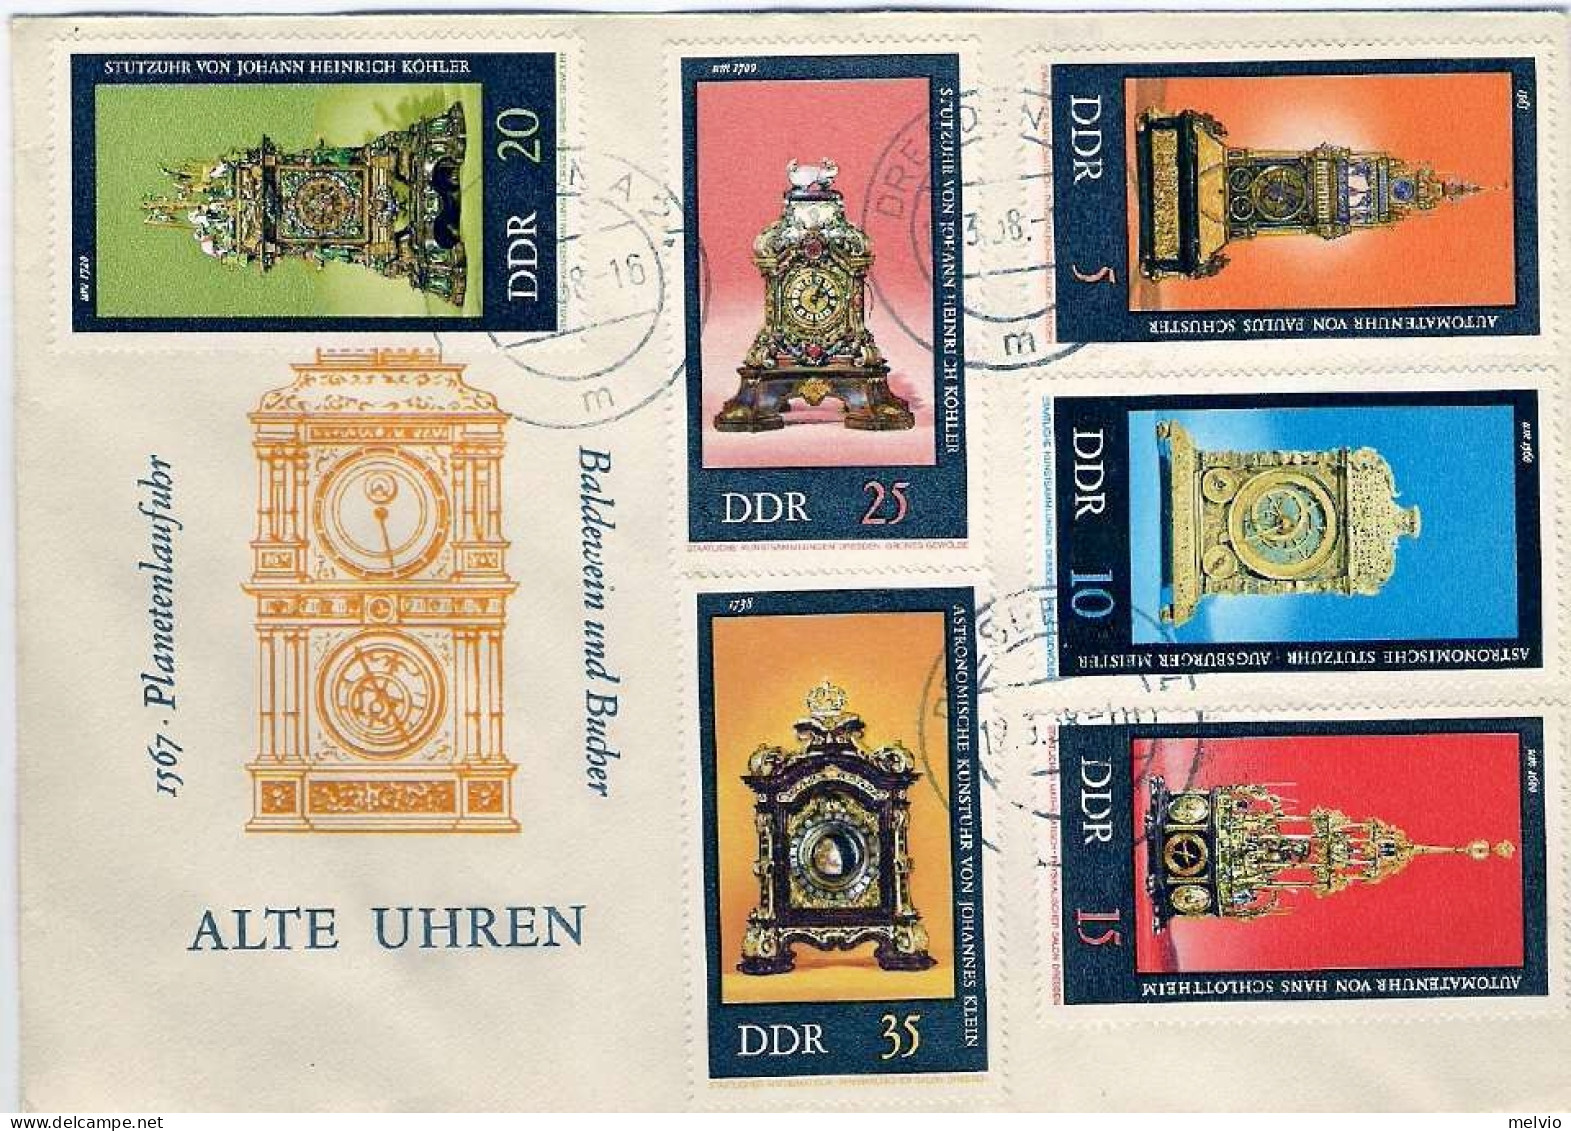 1975-Germania DDR S.6v."Orologi Antichi"su Fdc Con Annullo Di Favore - Covers & Documents